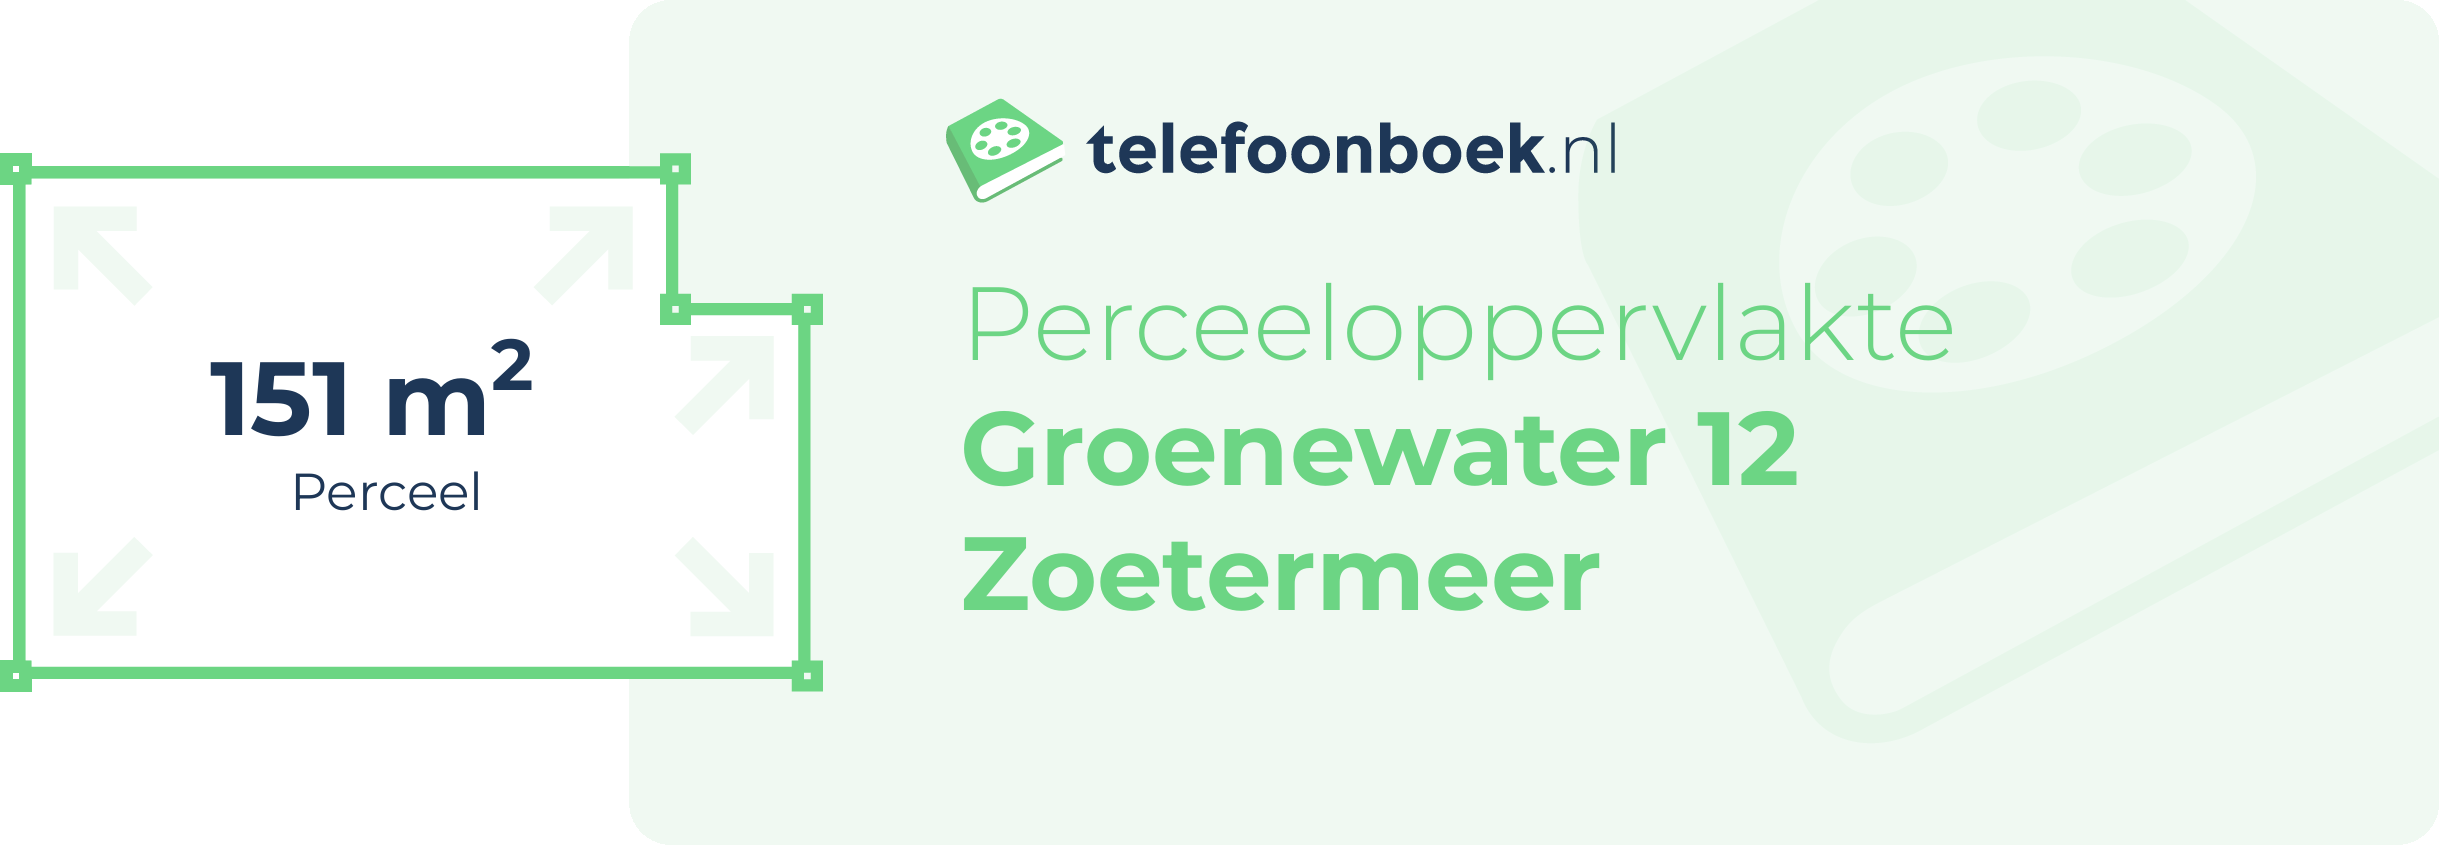 Perceeloppervlakte Groenewater 12 Zoetermeer